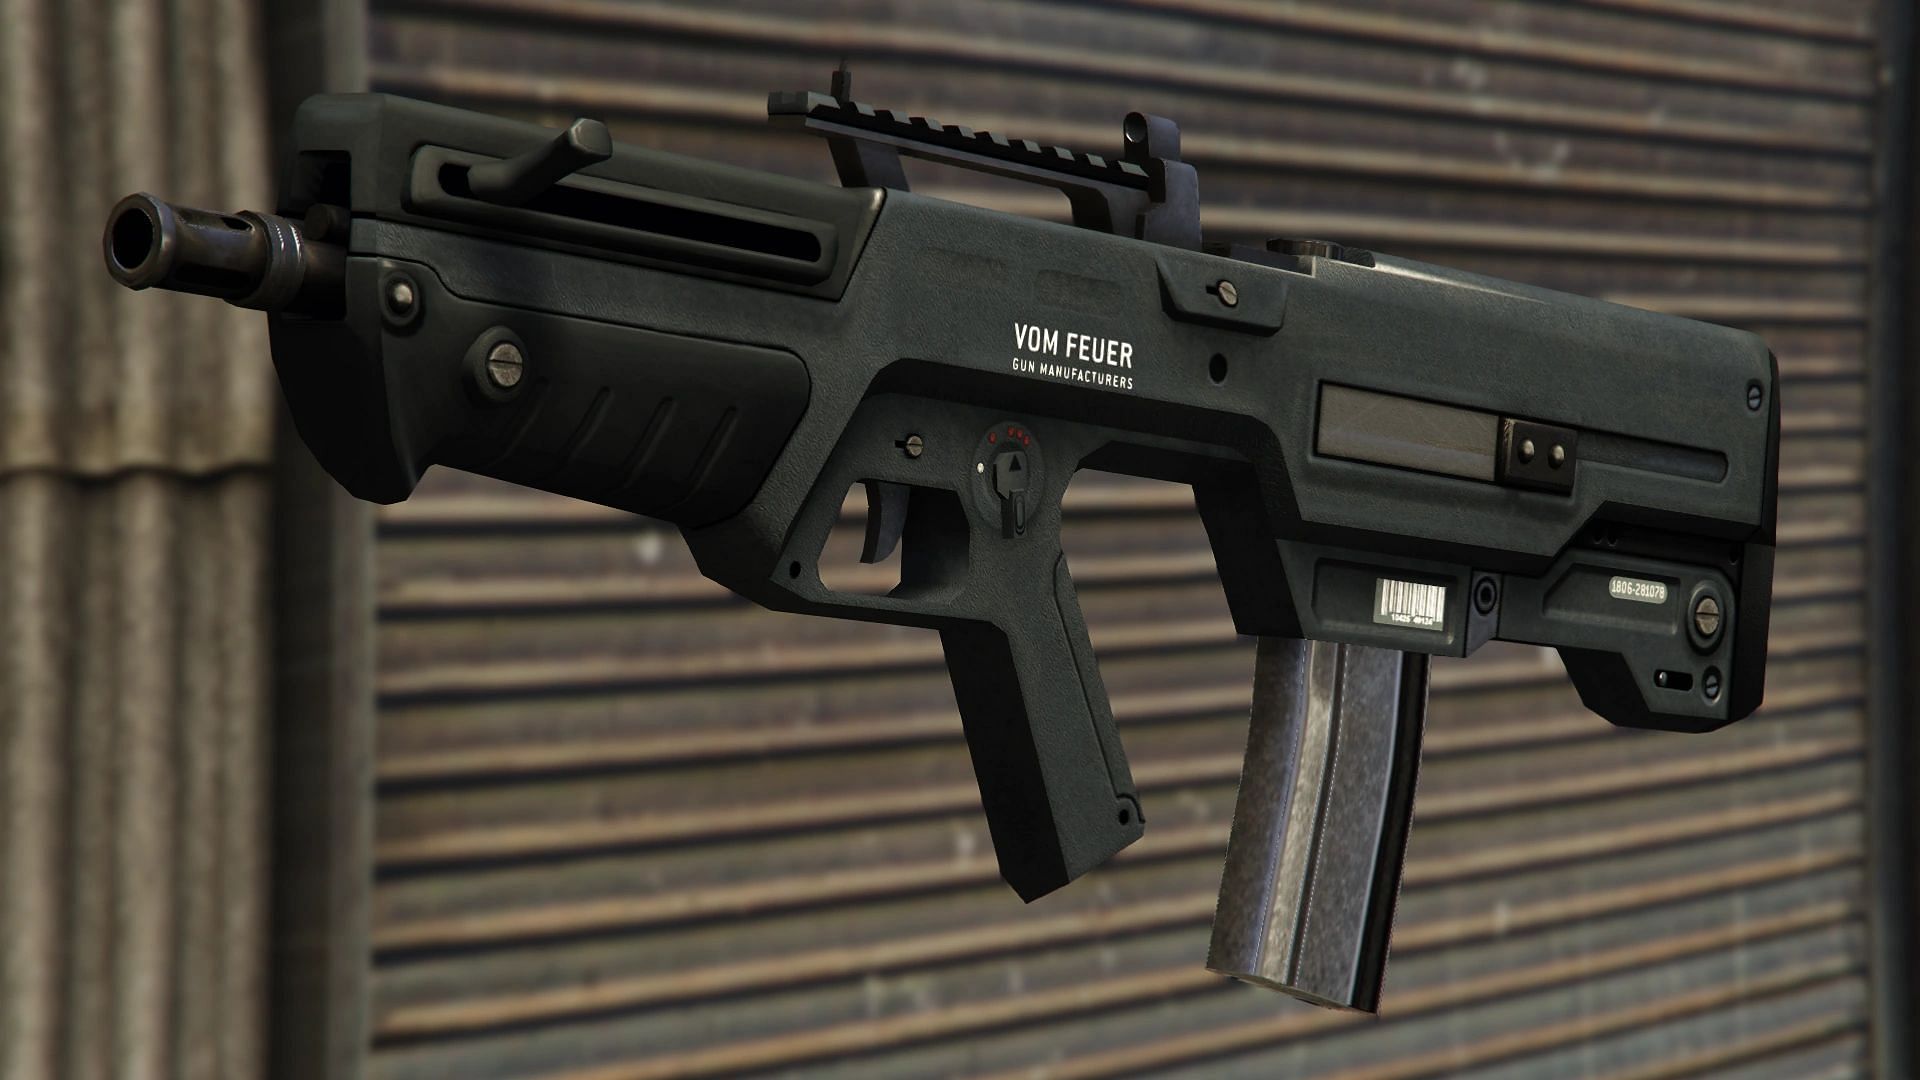 Advanced Rifle is one of the favorites among players. (Image via GTA.Fandom.com)